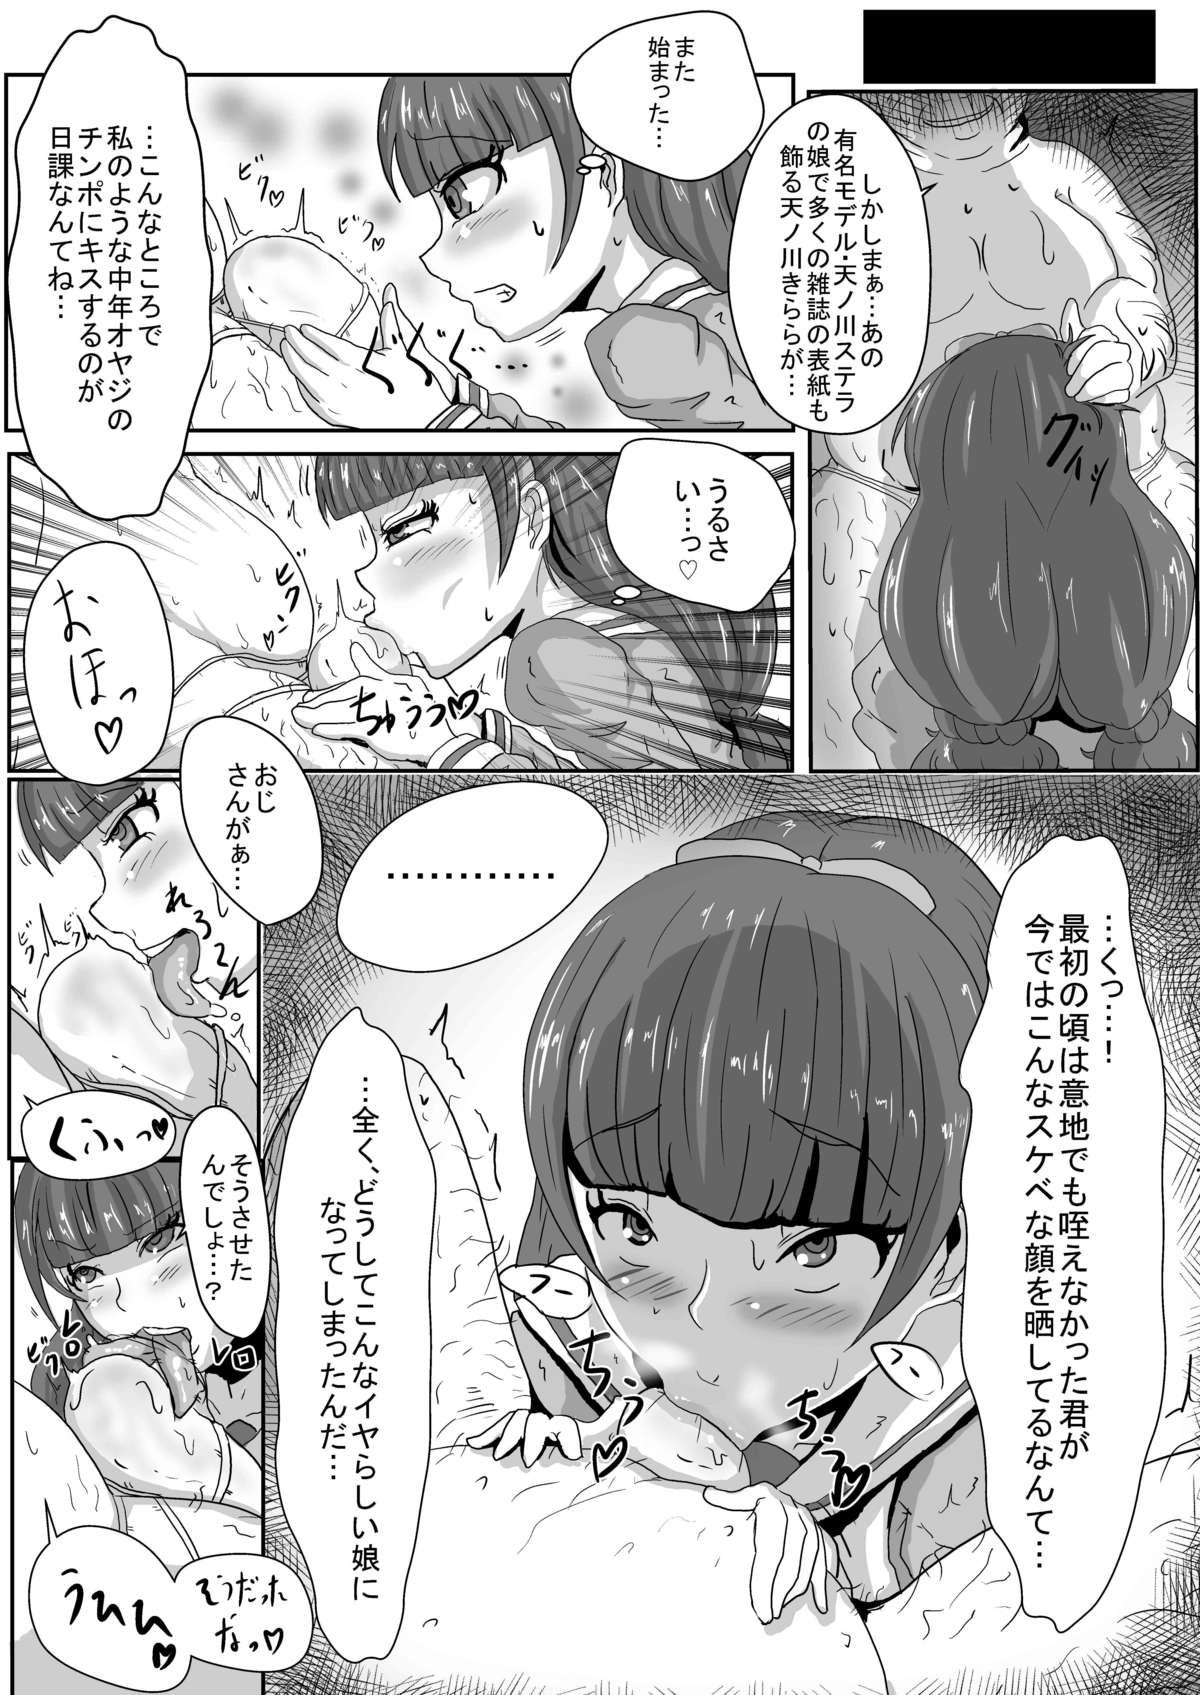 Hotfuck Amanogawa Kirara wa Isogashii - Go princess precure Hot Whores - Page 5